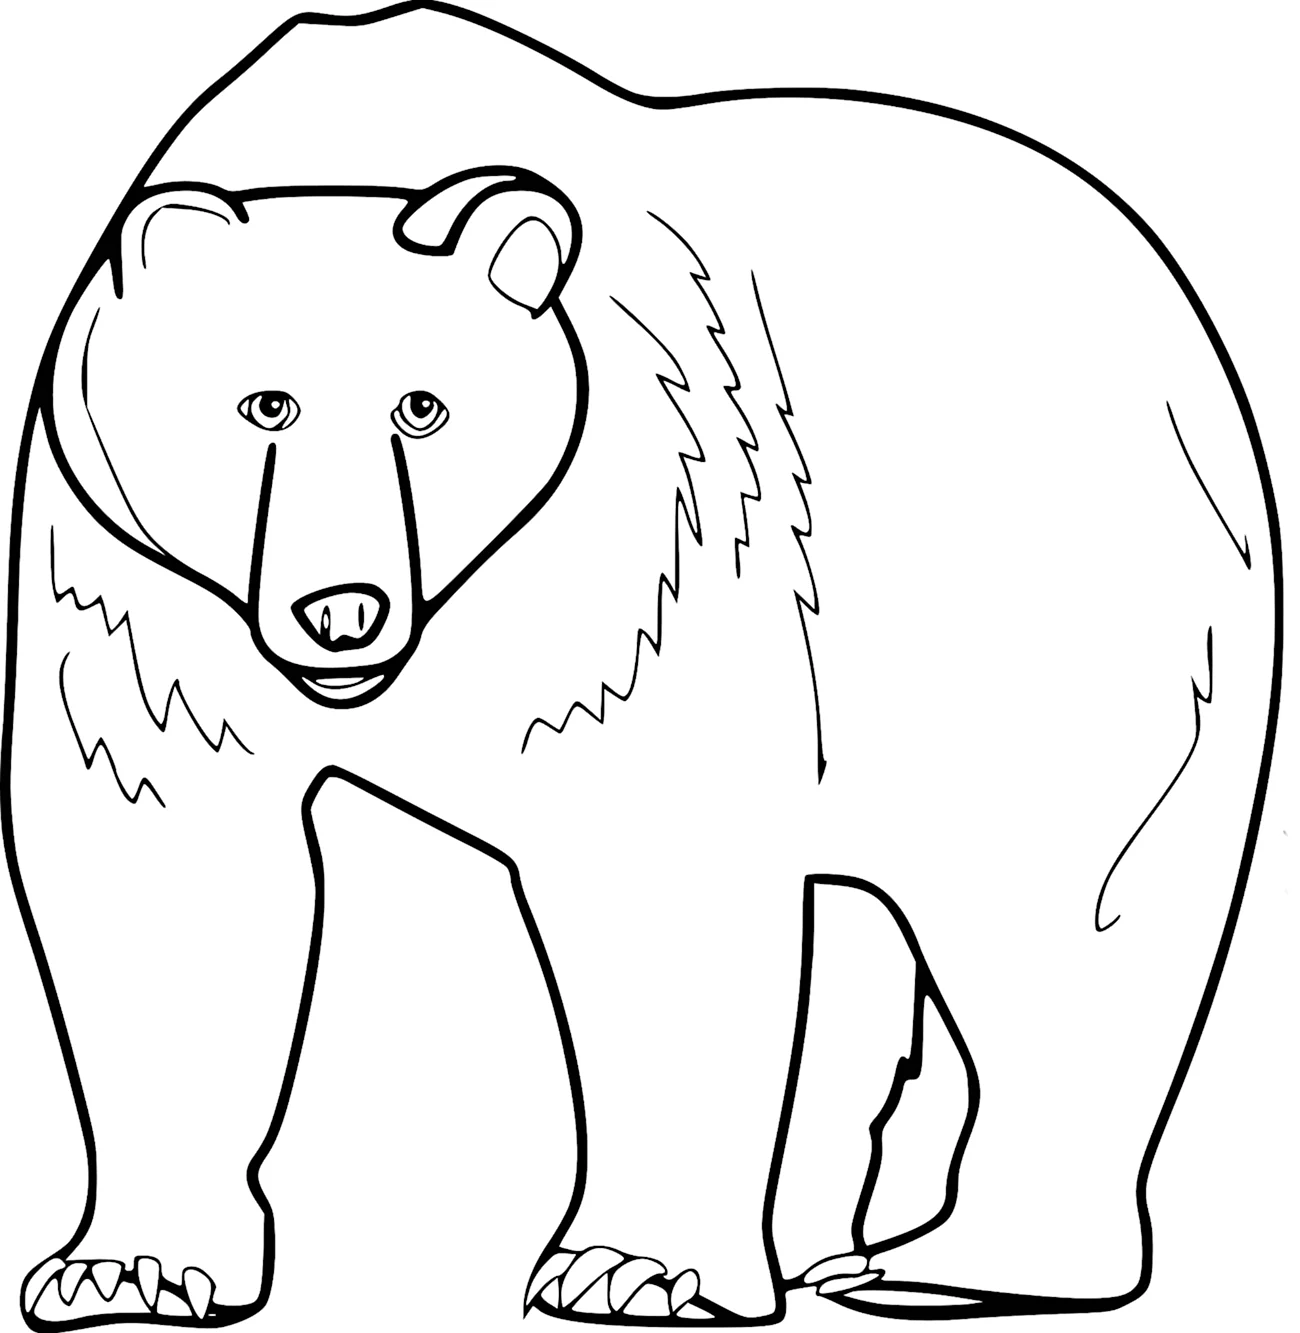 Очковый медведь раскраска. Для срисовки